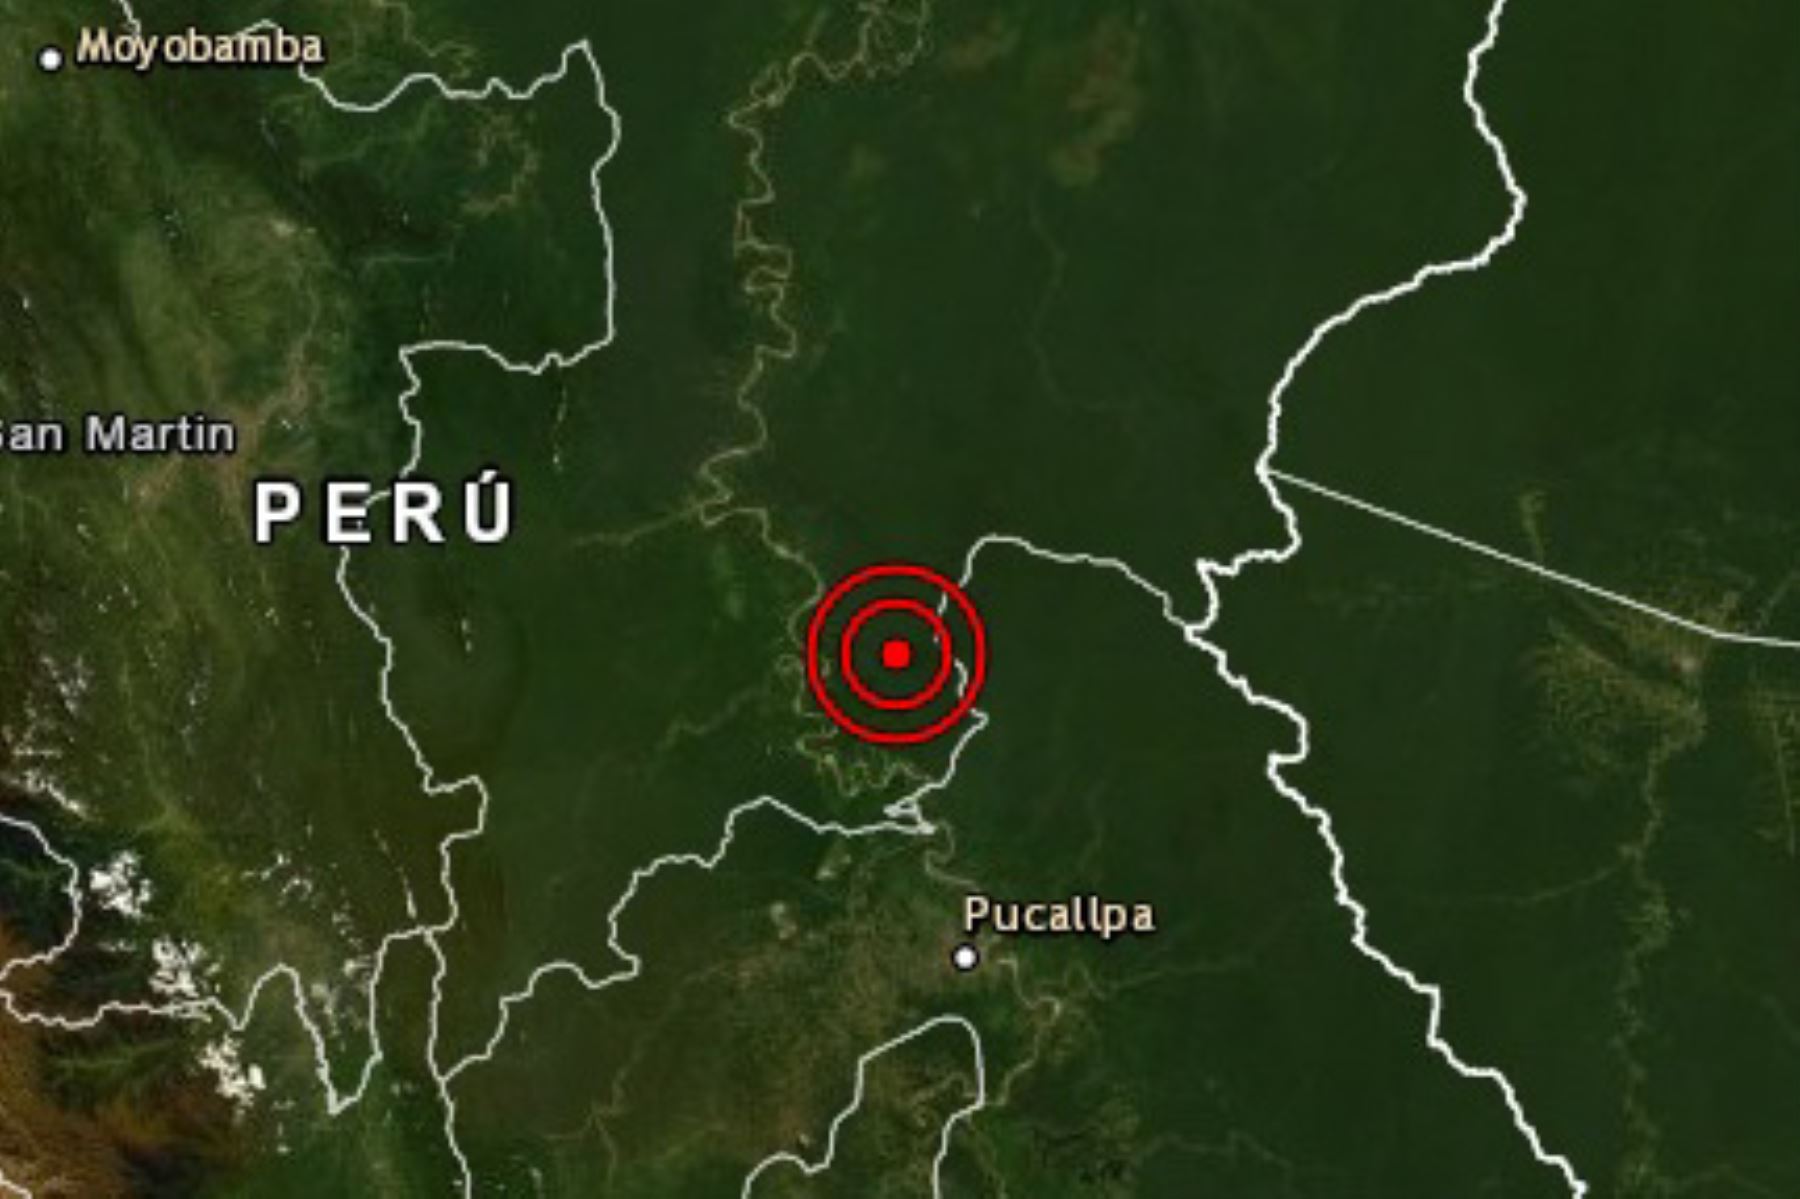 Un sismo de magnitud 3.9 se registró hoy en el departamento de Huánuco, el segundo que ocurre hoy y el décimo cuarto en lo que va del año en nuestro país, informó el Instituto Geofísico del Perú (IGP).